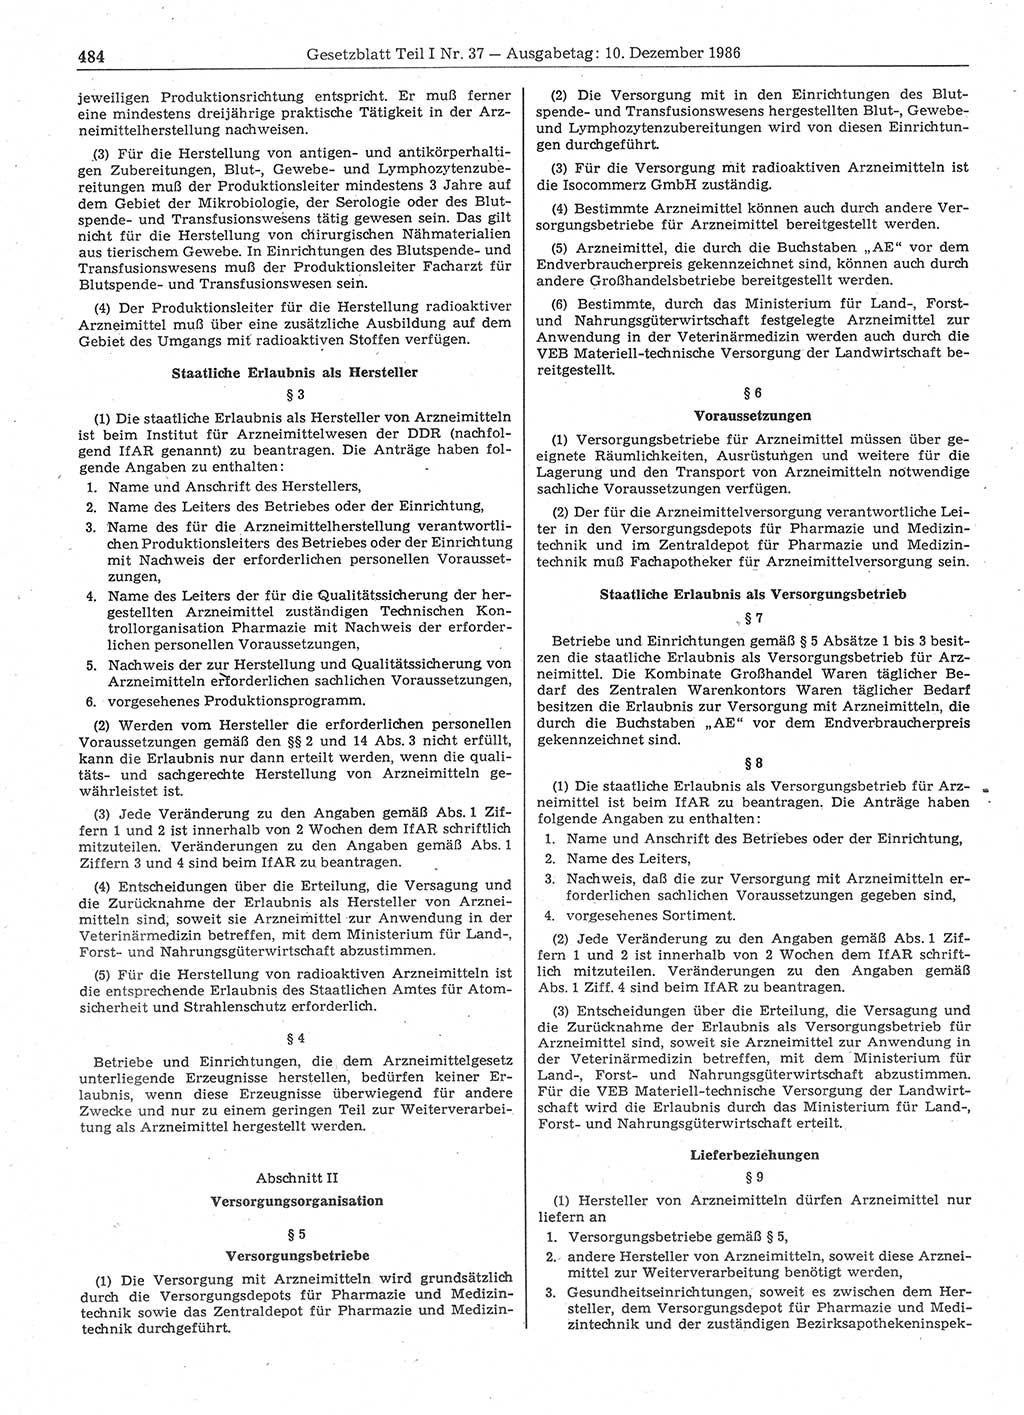 Gesetzblatt (GBl.) der Deutschen Demokratischen Republik (DDR) Teil Ⅰ 1986, Seite 484 (GBl. DDR Ⅰ 1986, S. 484)